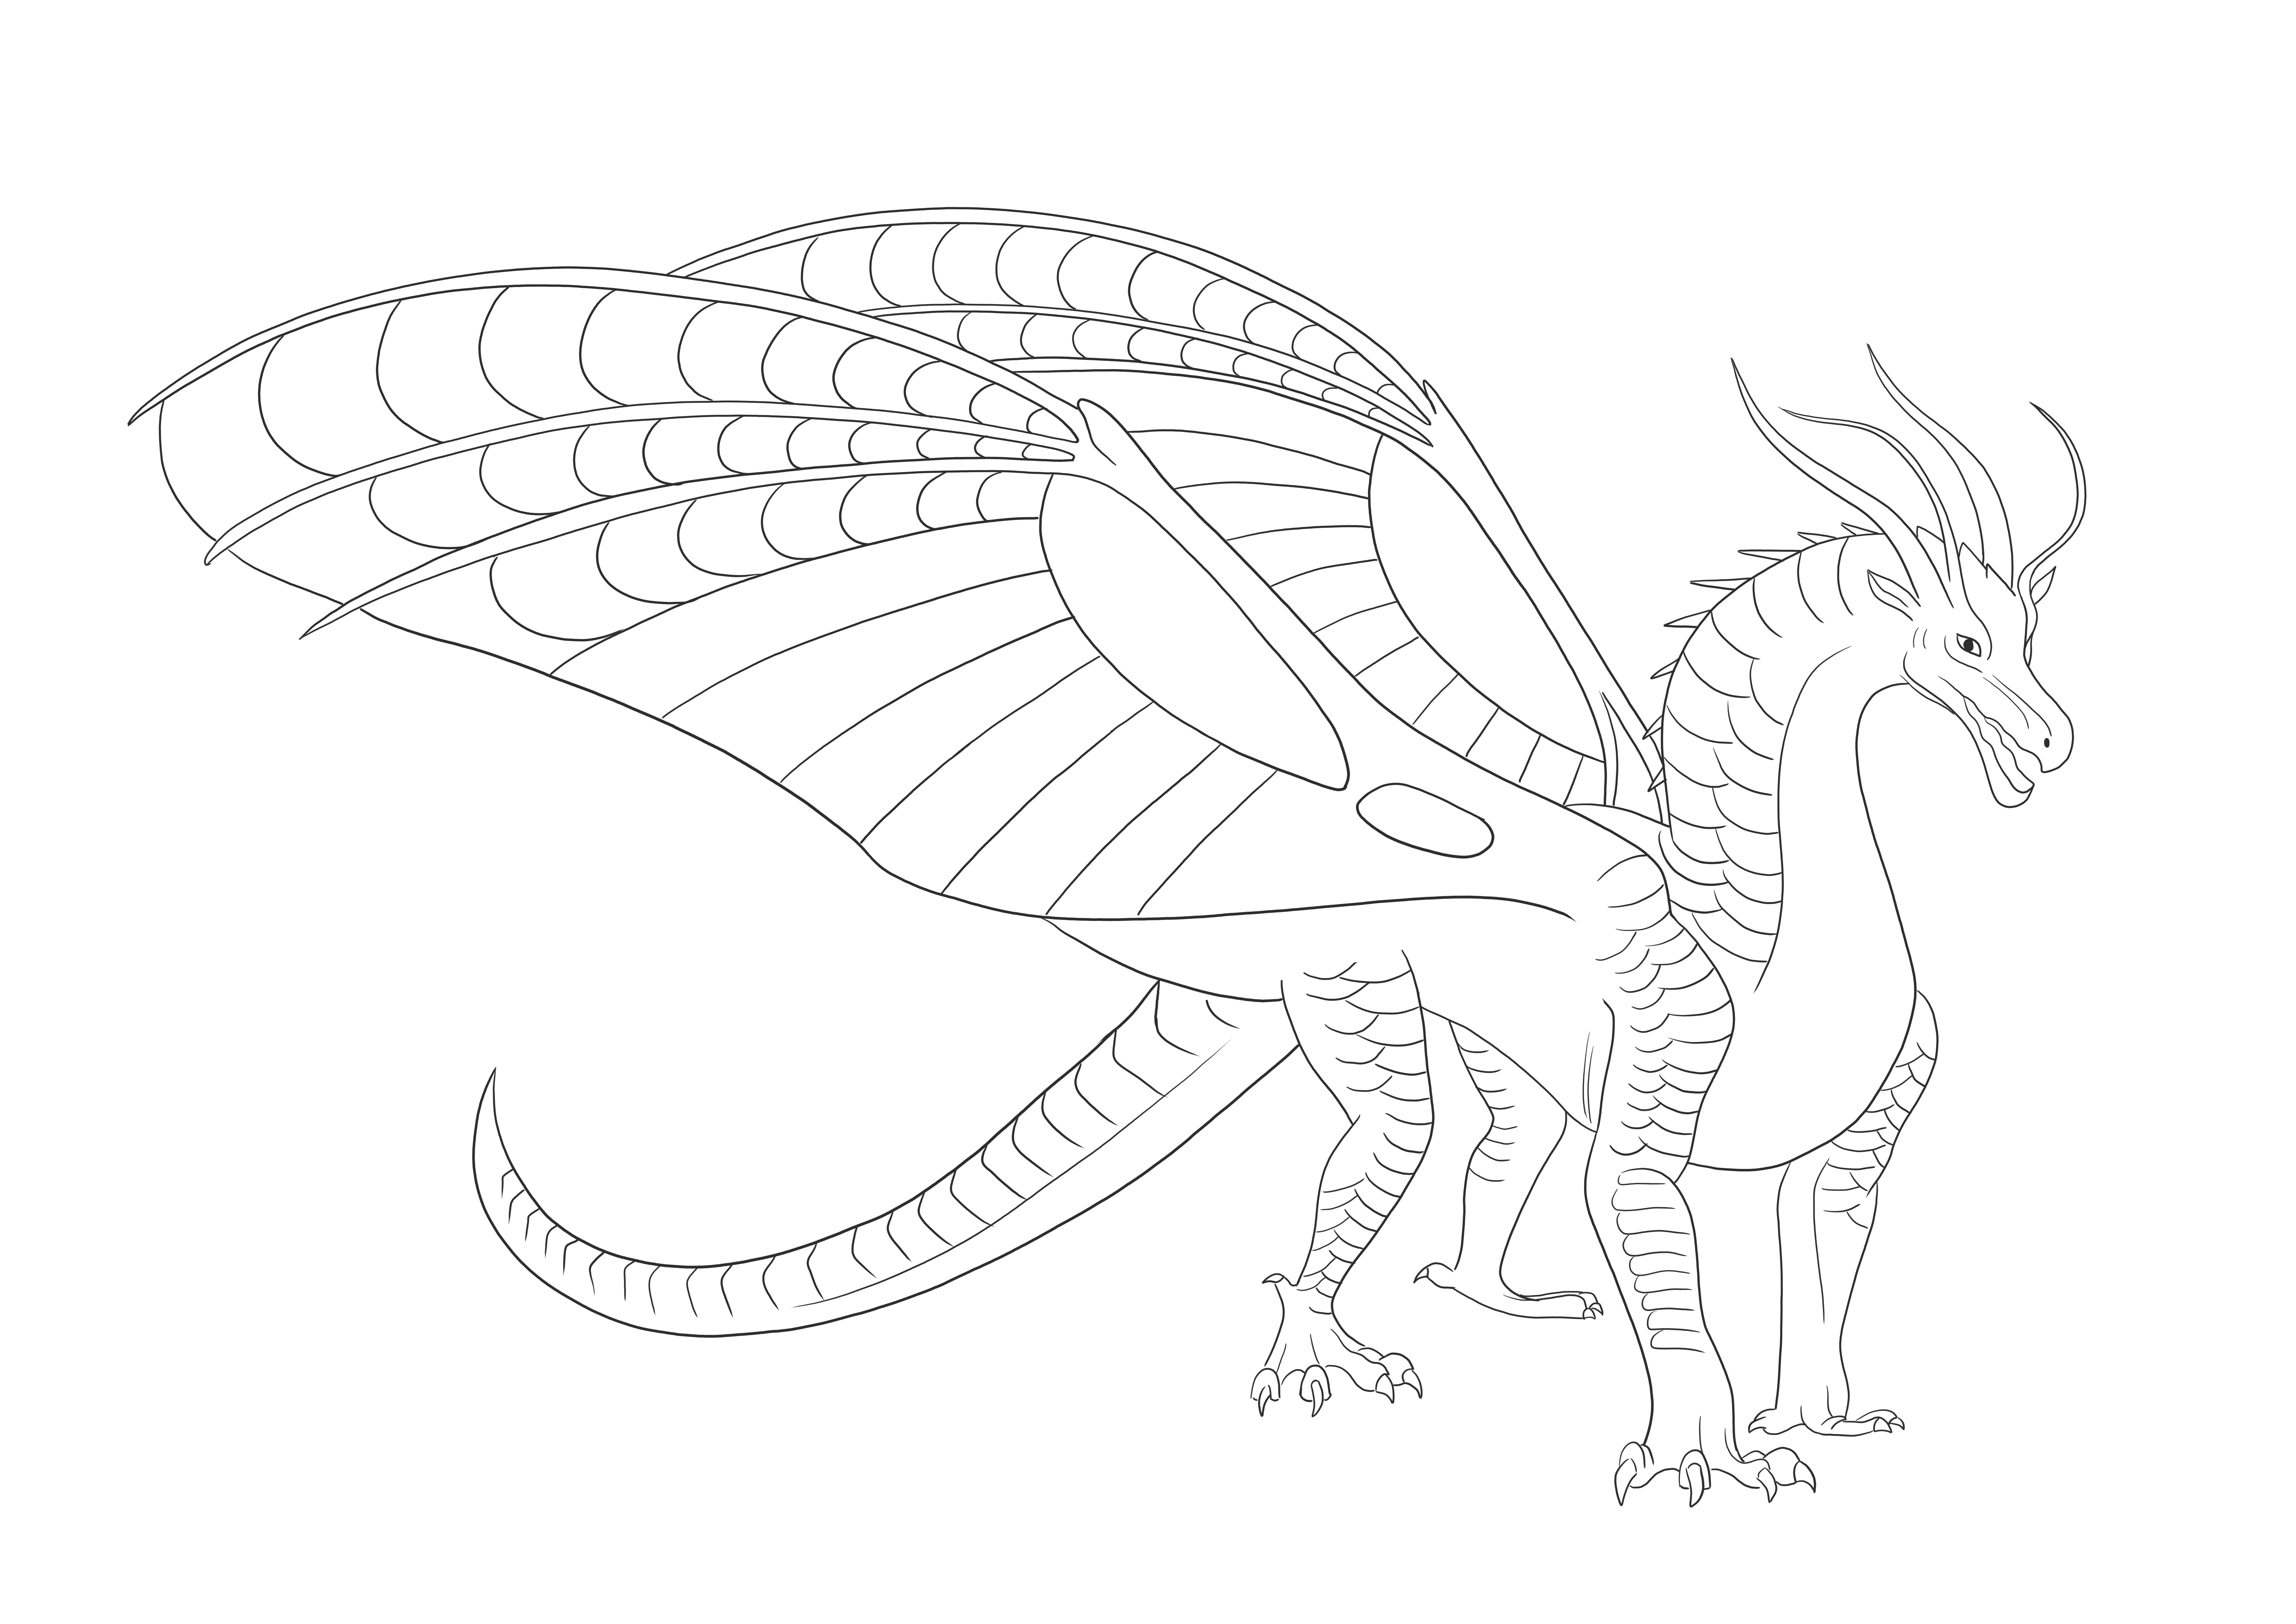 Silkwing Dragon dari sayap api bebas untuk mencetak dan mewarnai gambar